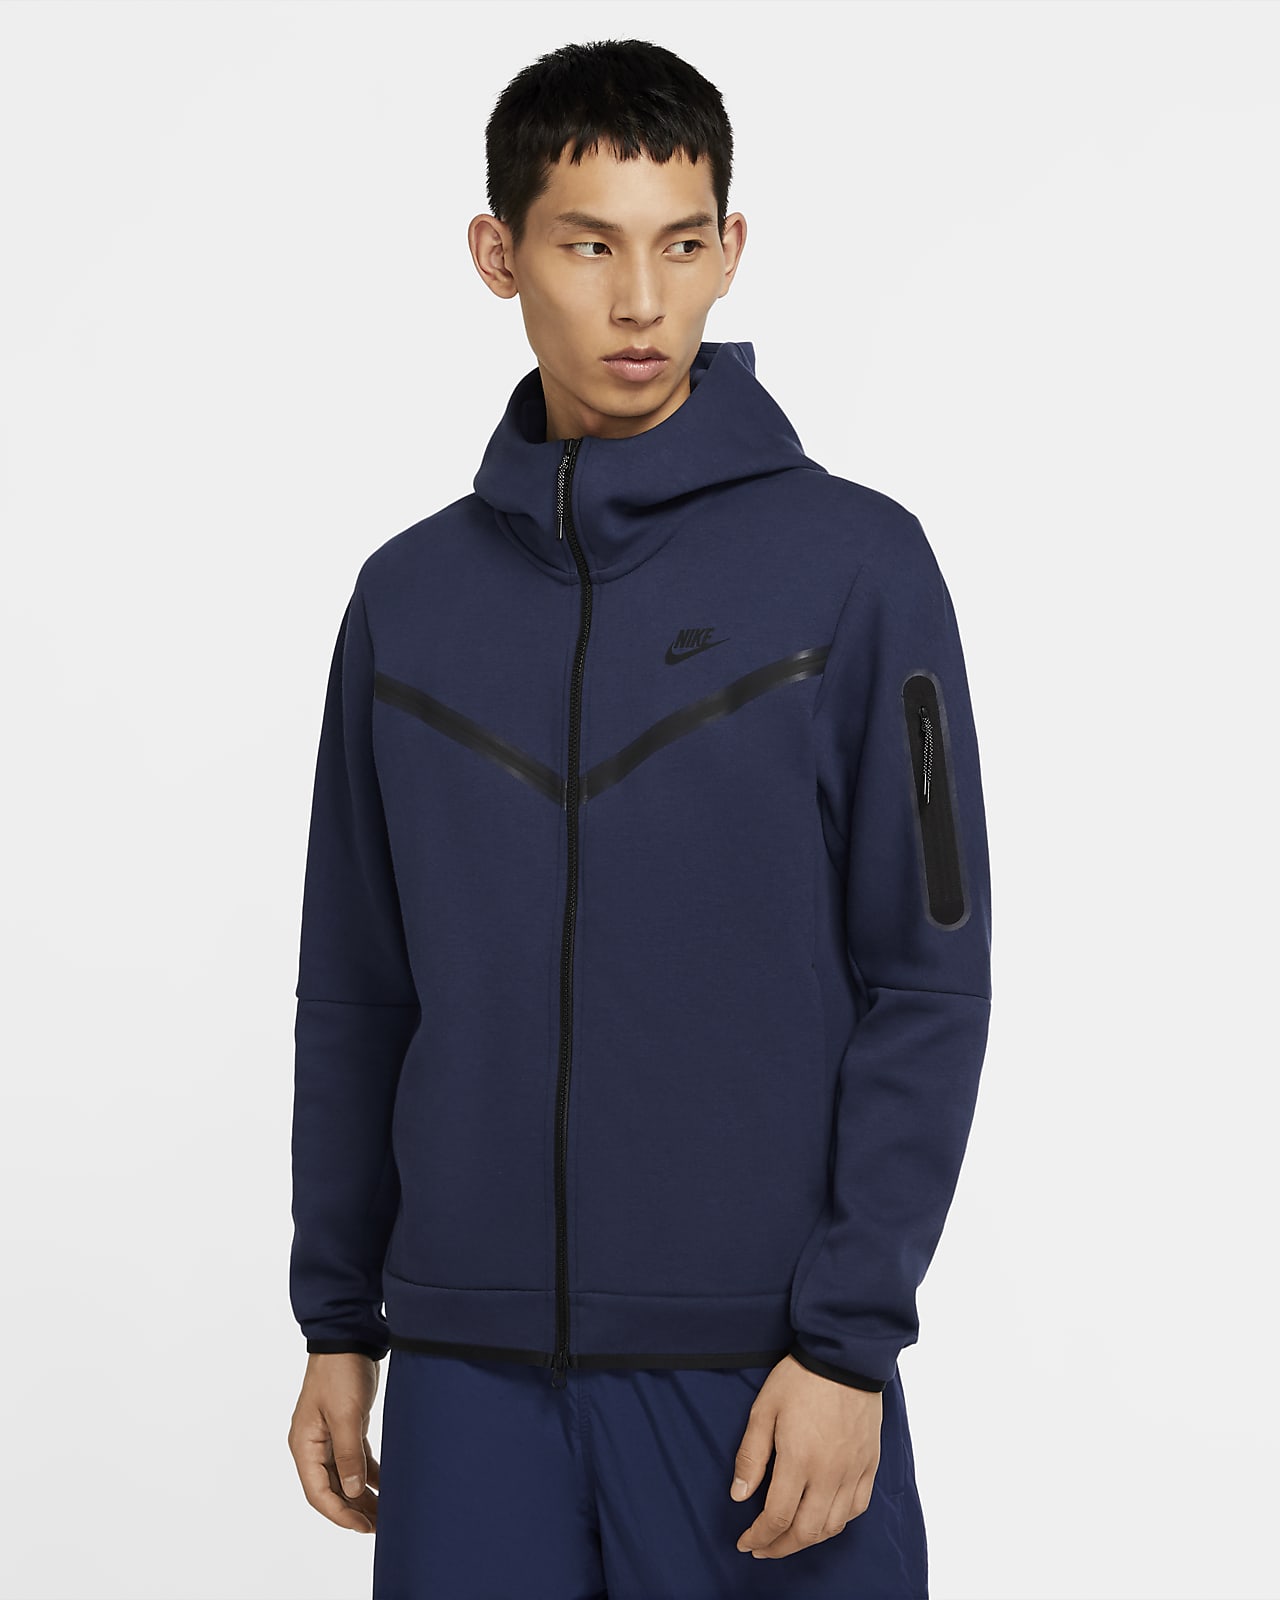 Nike Sportswear Tech Fleece Full-Zip Hoodie. LU